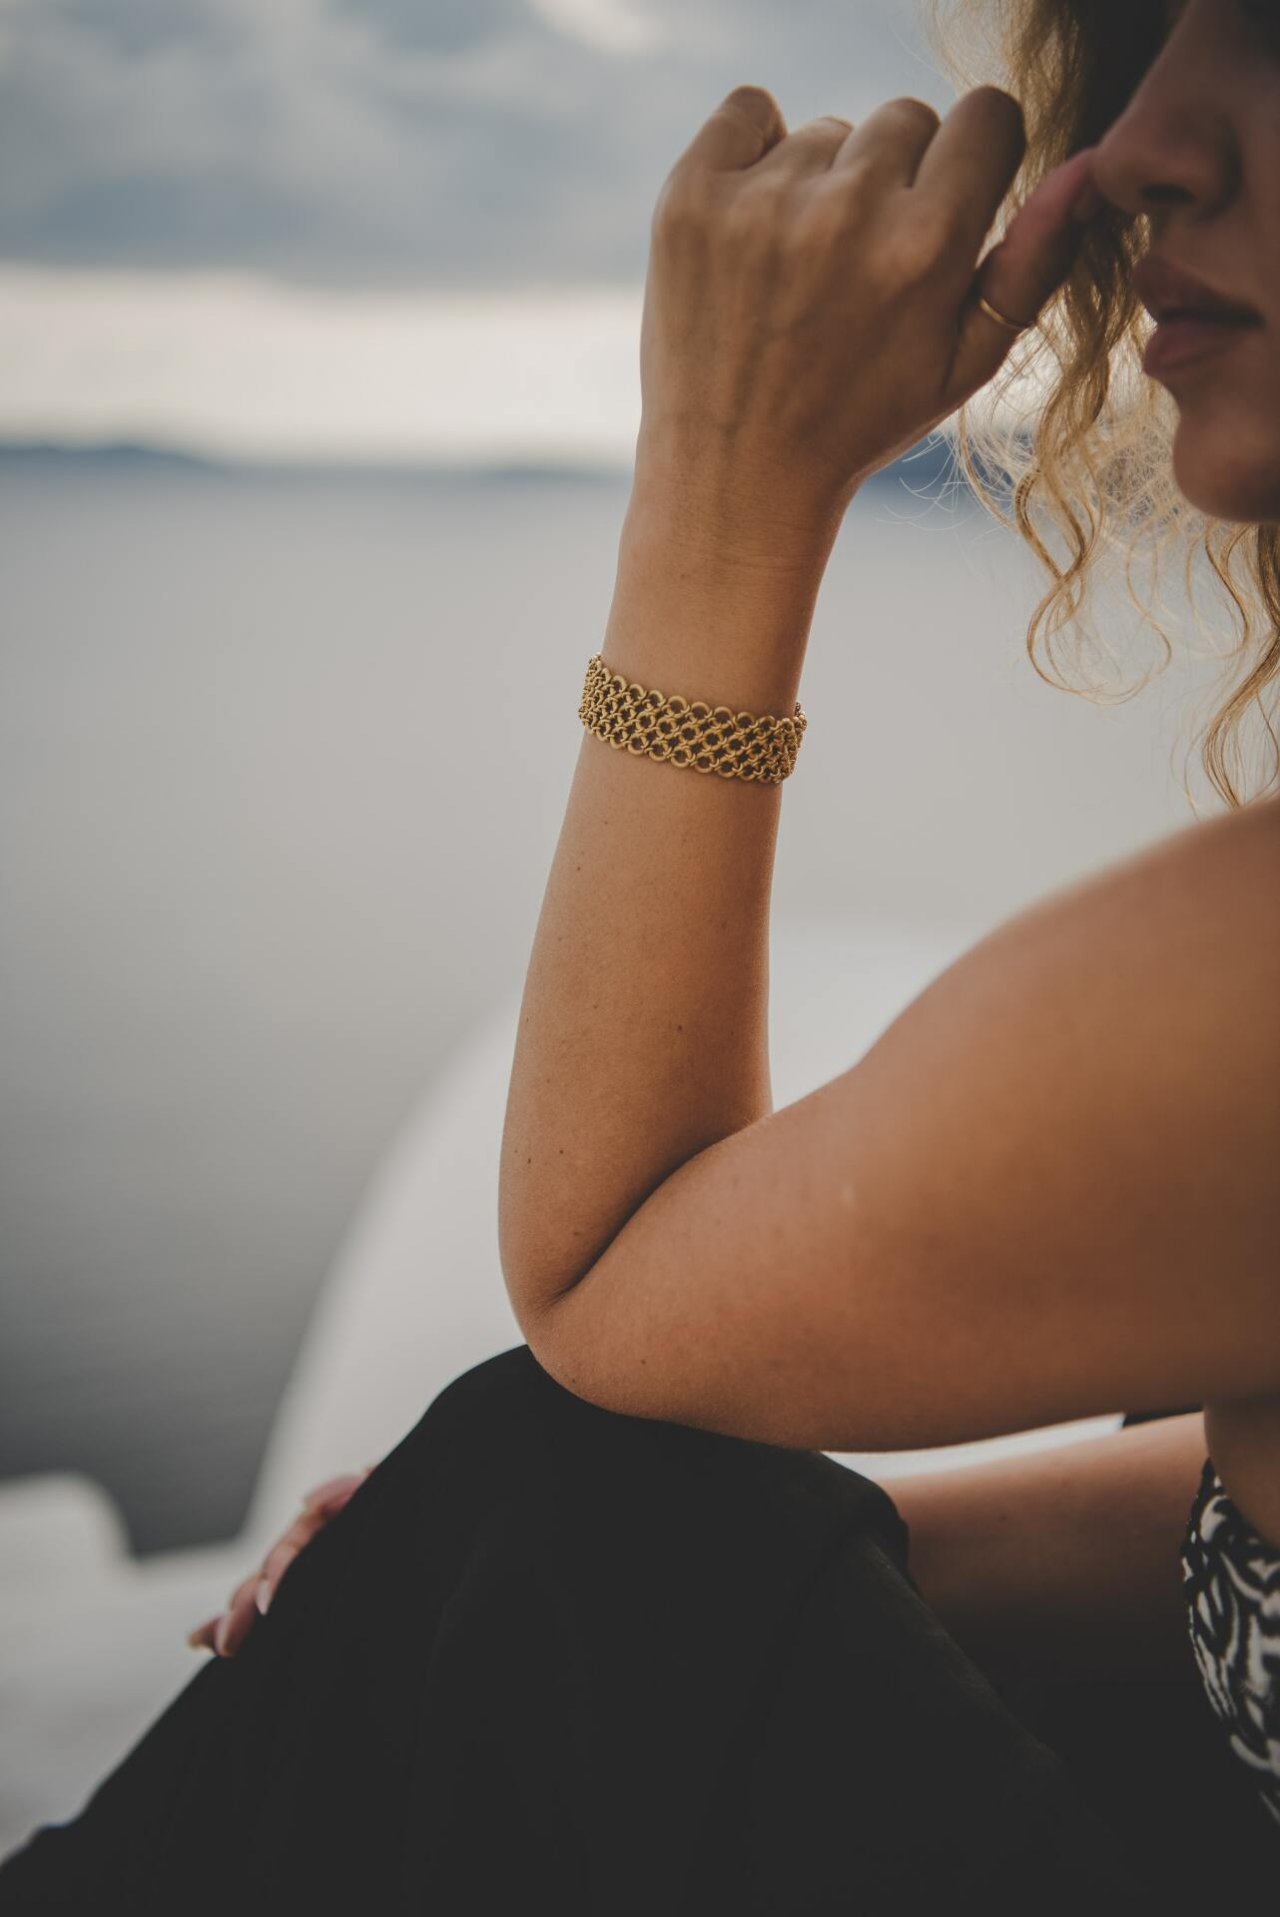 Złota bransoletka na ręce kobiety w lokach